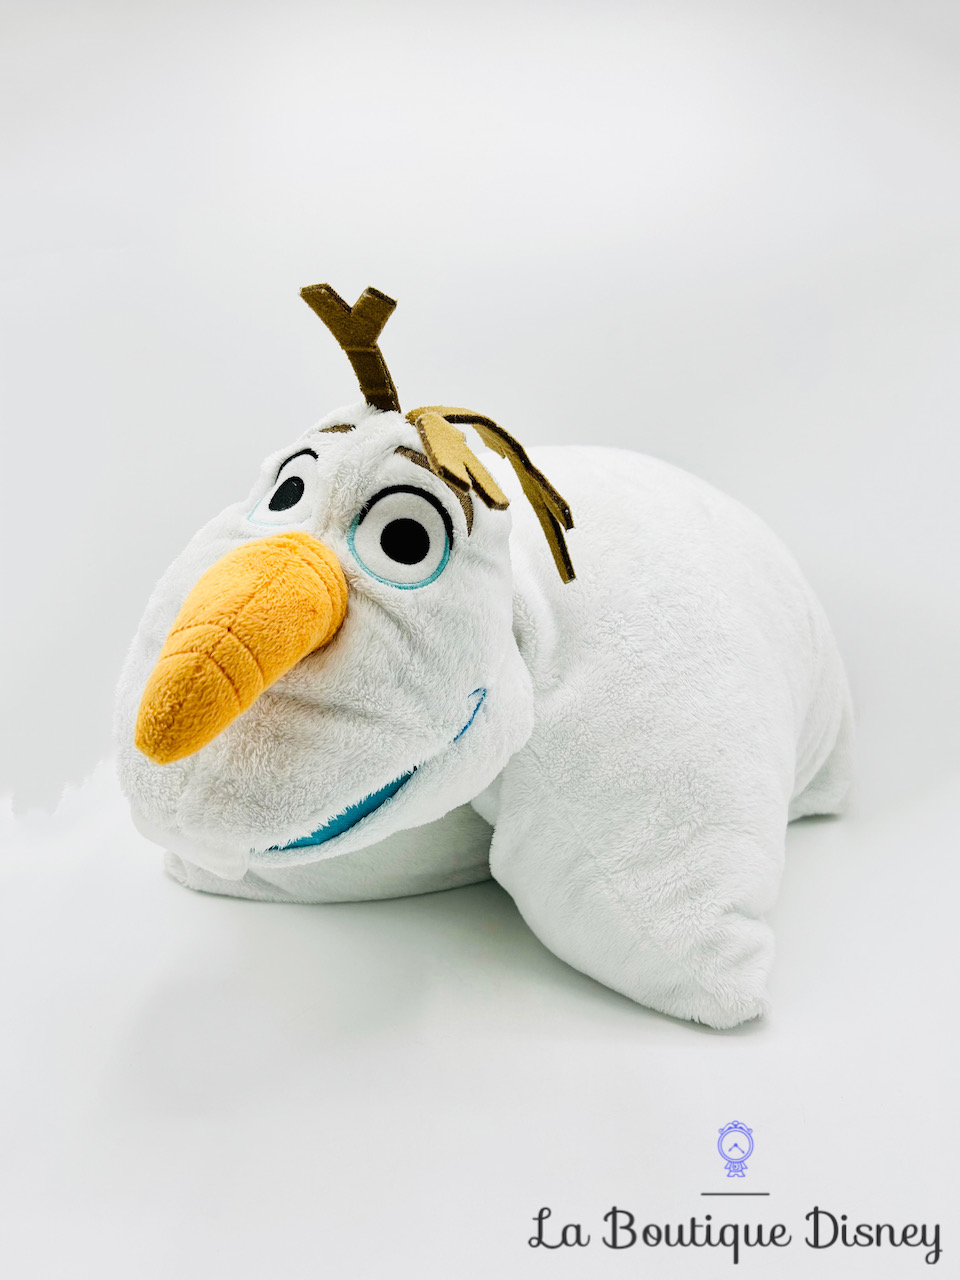 Coussin Olaf La reine des neiges Disney Parks 2018 Disneyland peluche oreiller pliable bonhomme neige